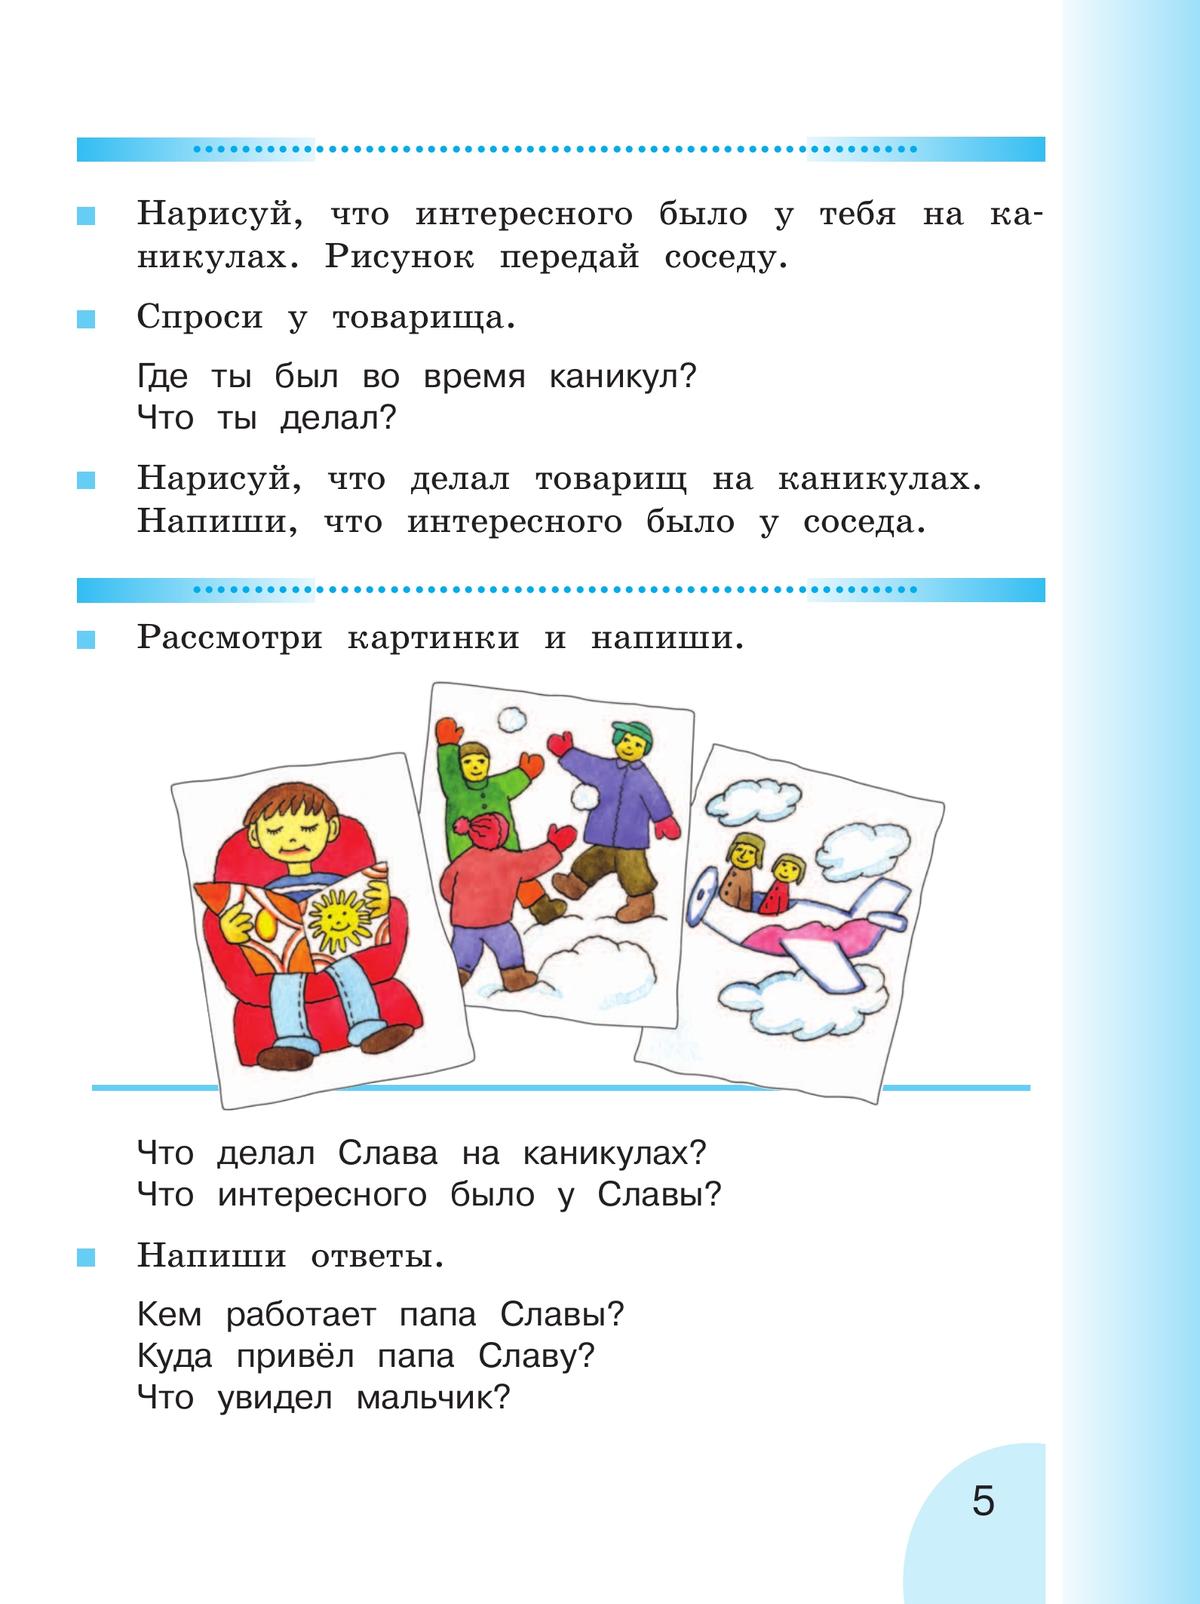 Русский язык. Развитие речи. 2 класс. Учебник. В 2 ч. Часть 2 (для глухих обучающихся) 2